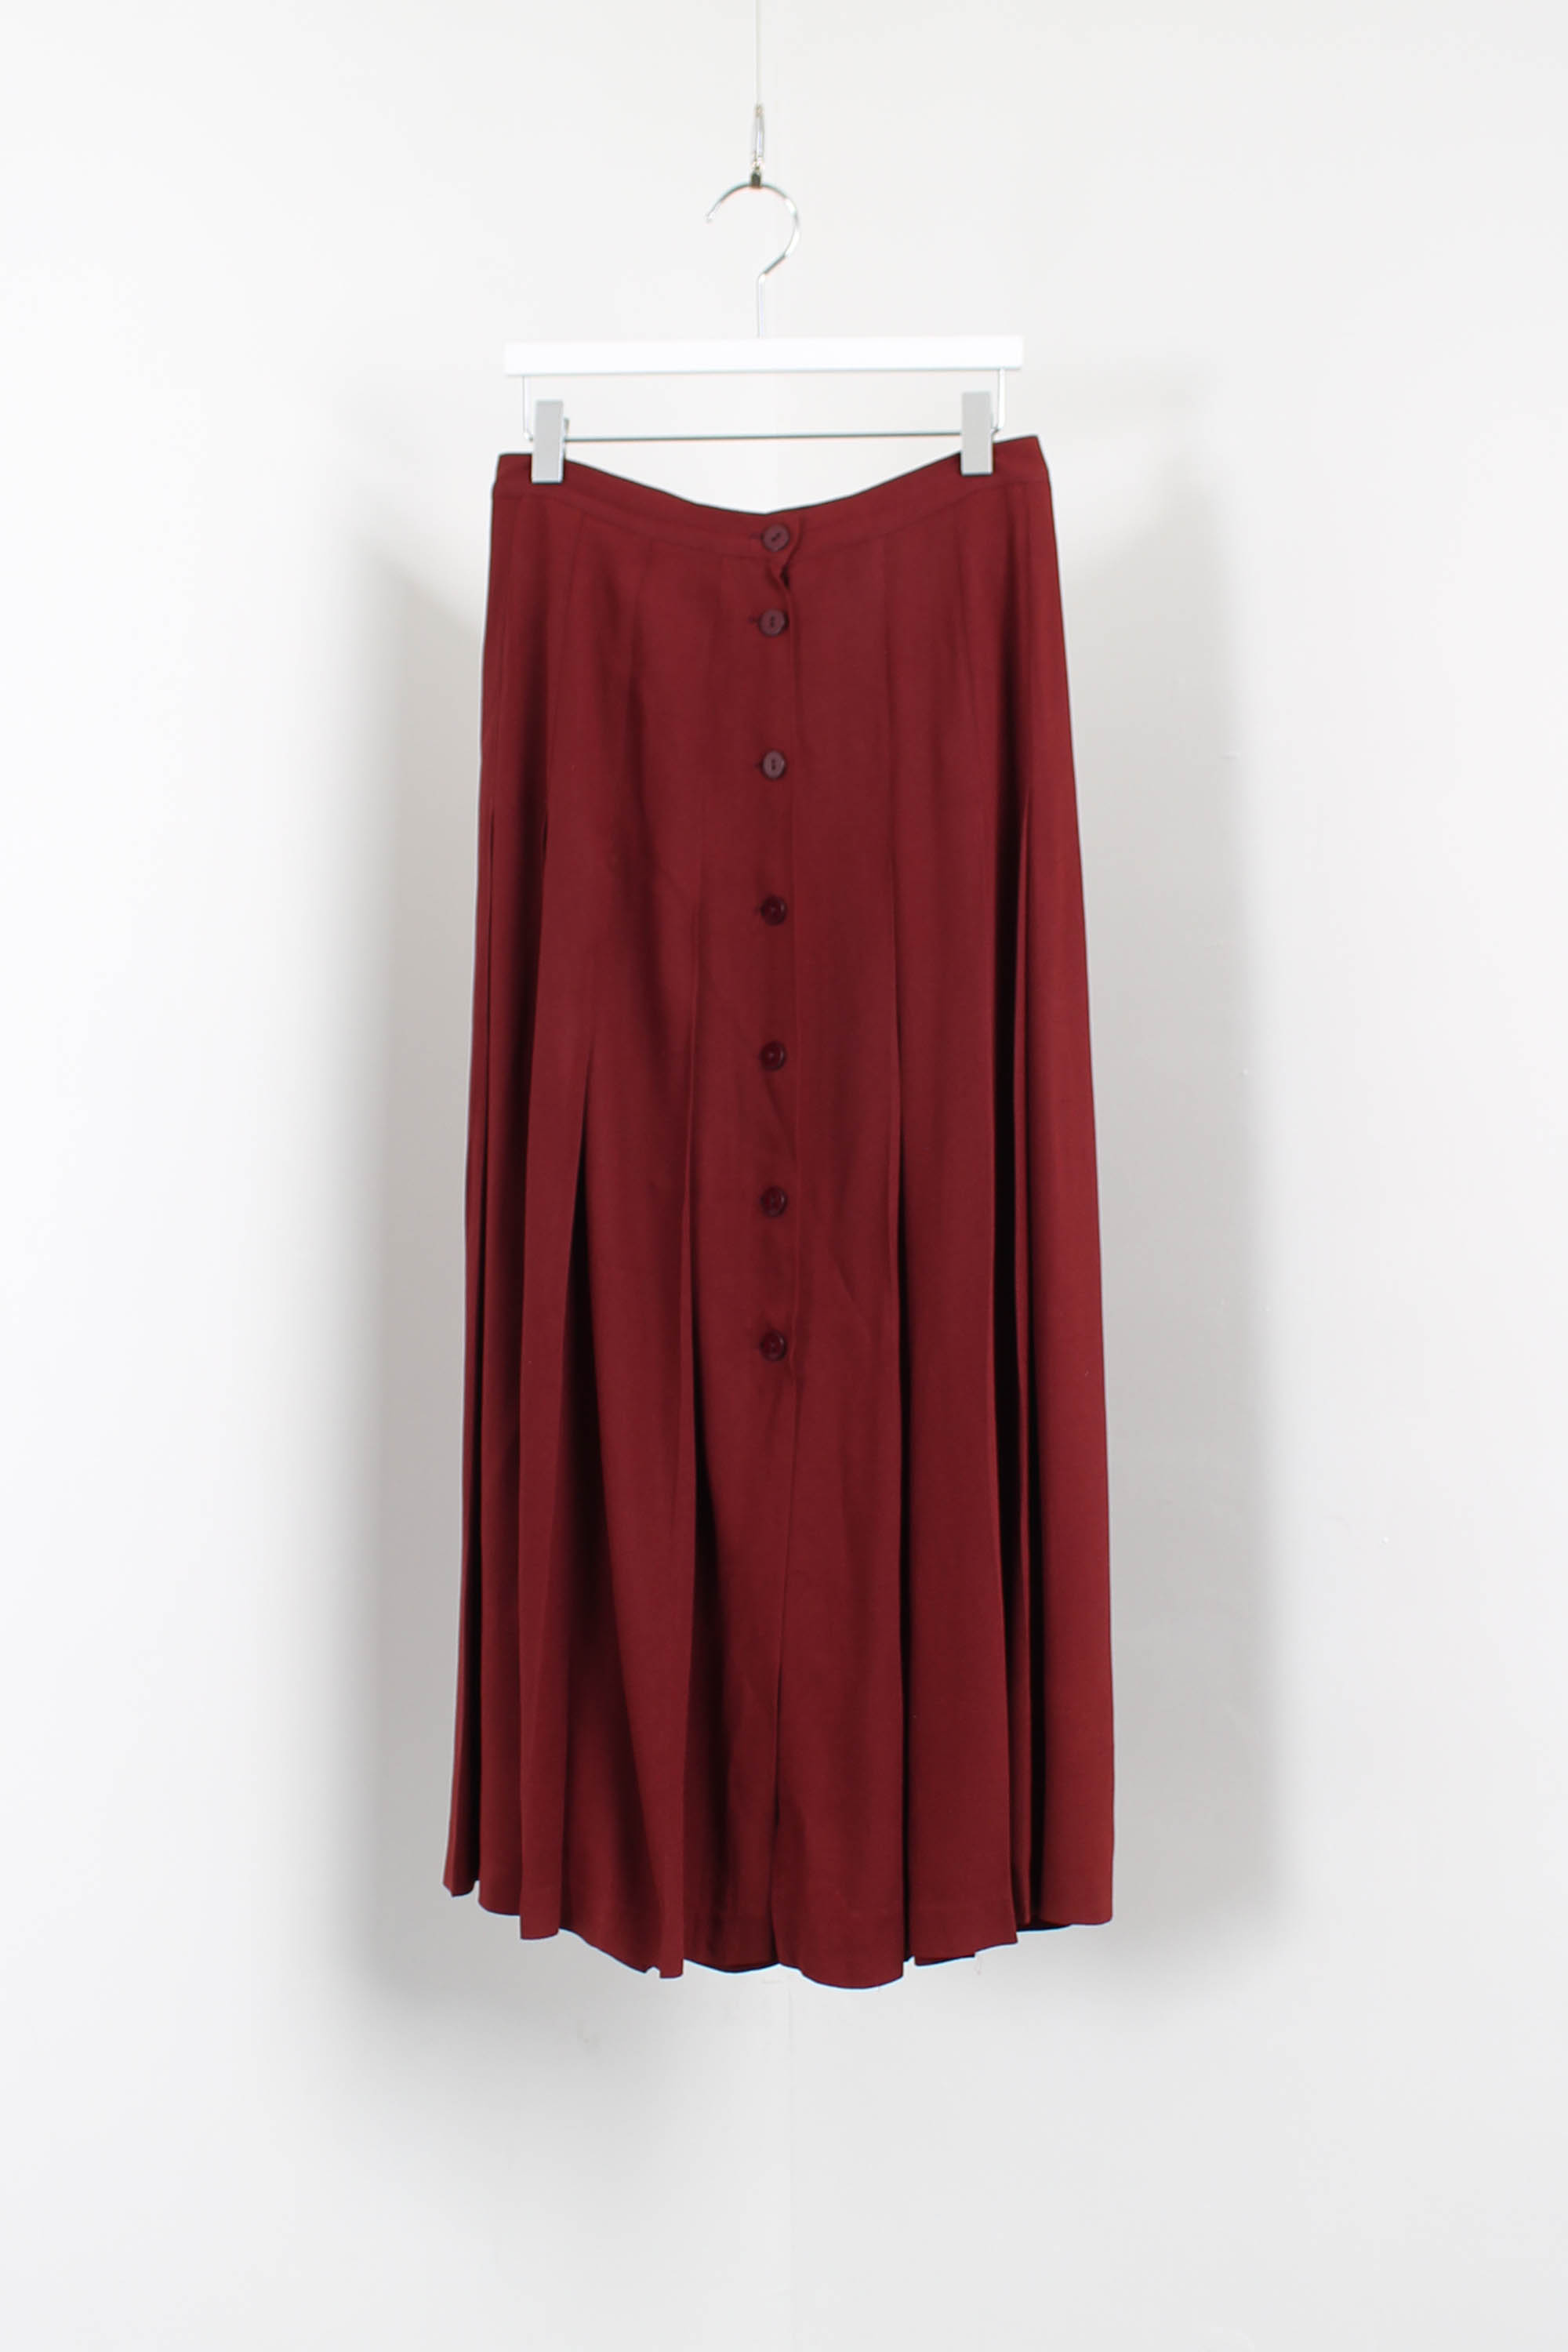 Agnes B long skirt